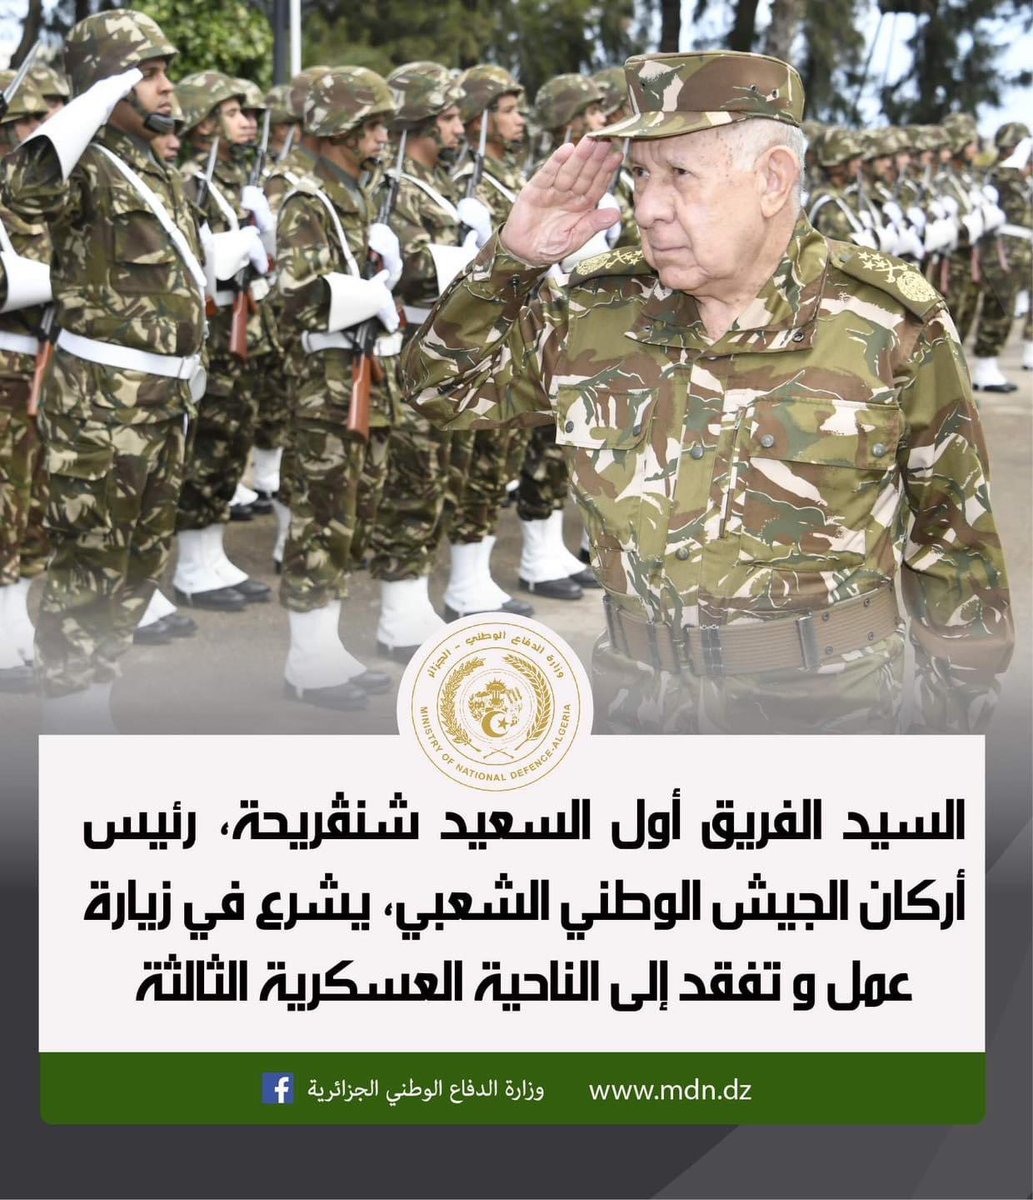 رئيس أركان الجيش الجزائري الفريق أول السعيد #شنقريحة يقوم بزيارة عمل وتفتيش إلى الناحية العسكرية الثالثة #بشار 🇩🇿